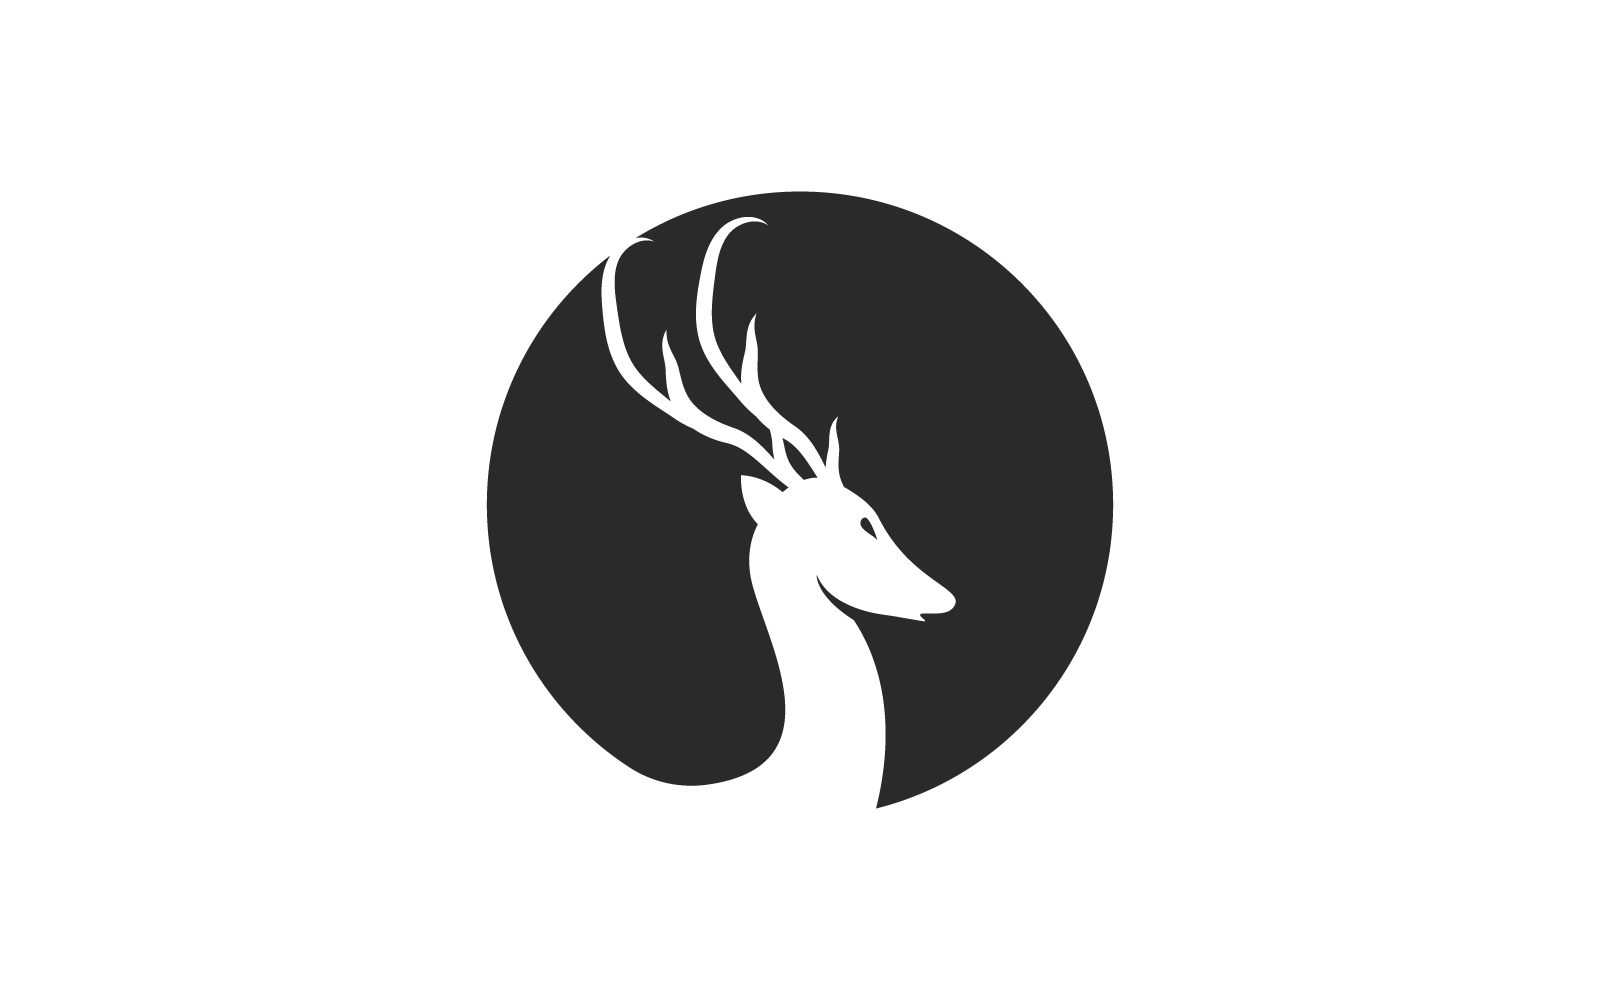 Deer antler ilustration logo design vector template Logo Template